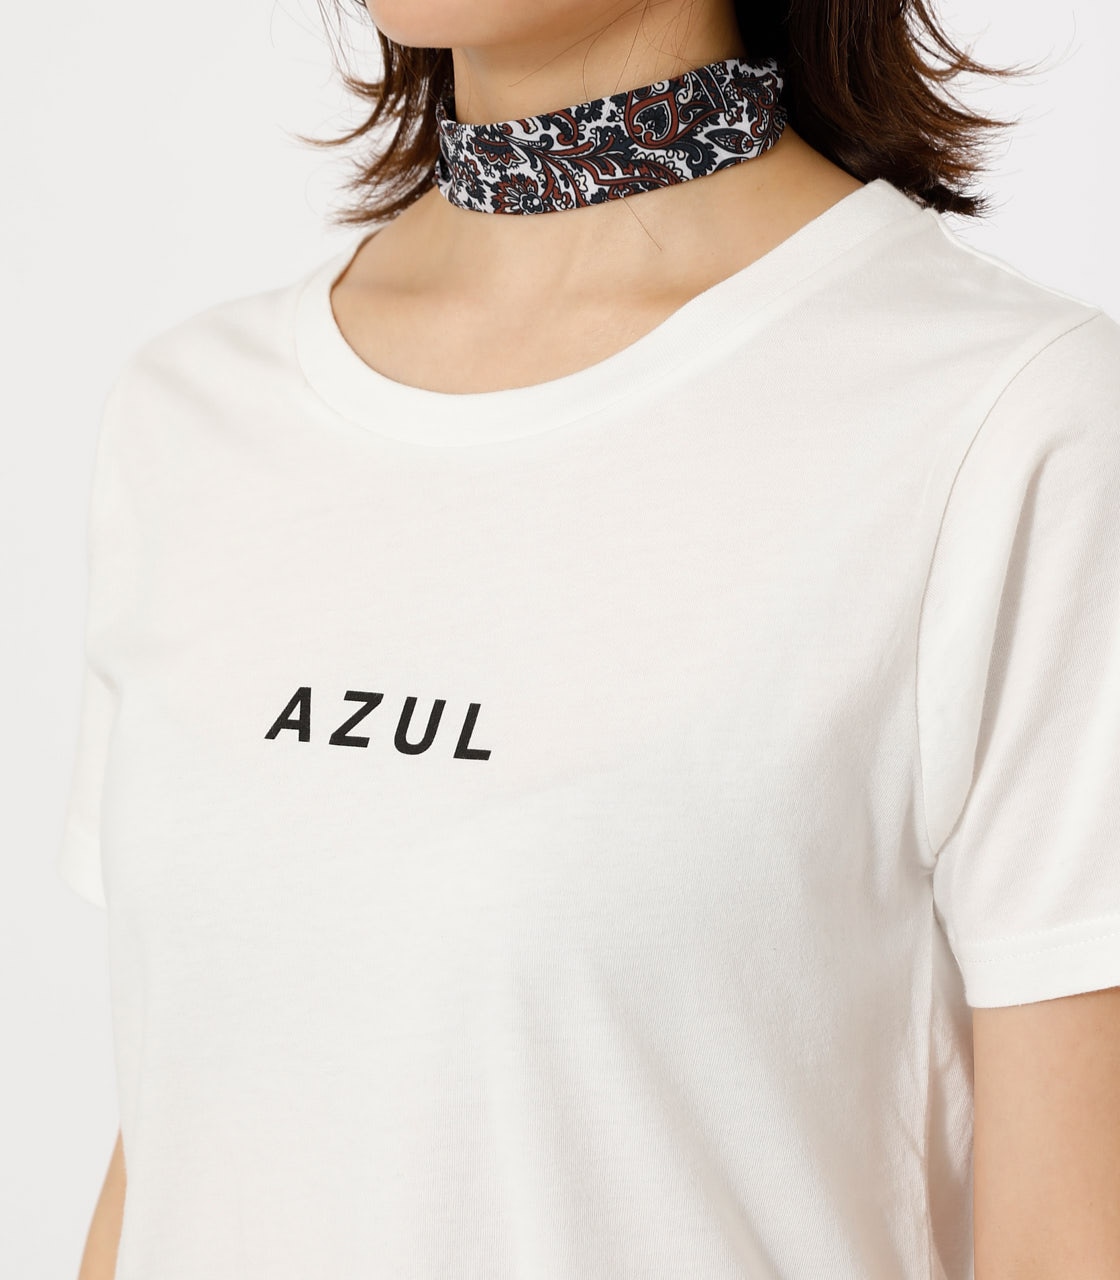 【9月21日(木)8：59まで期間限定価格】AZUL LOGO TEE/AZULロゴTシャツ